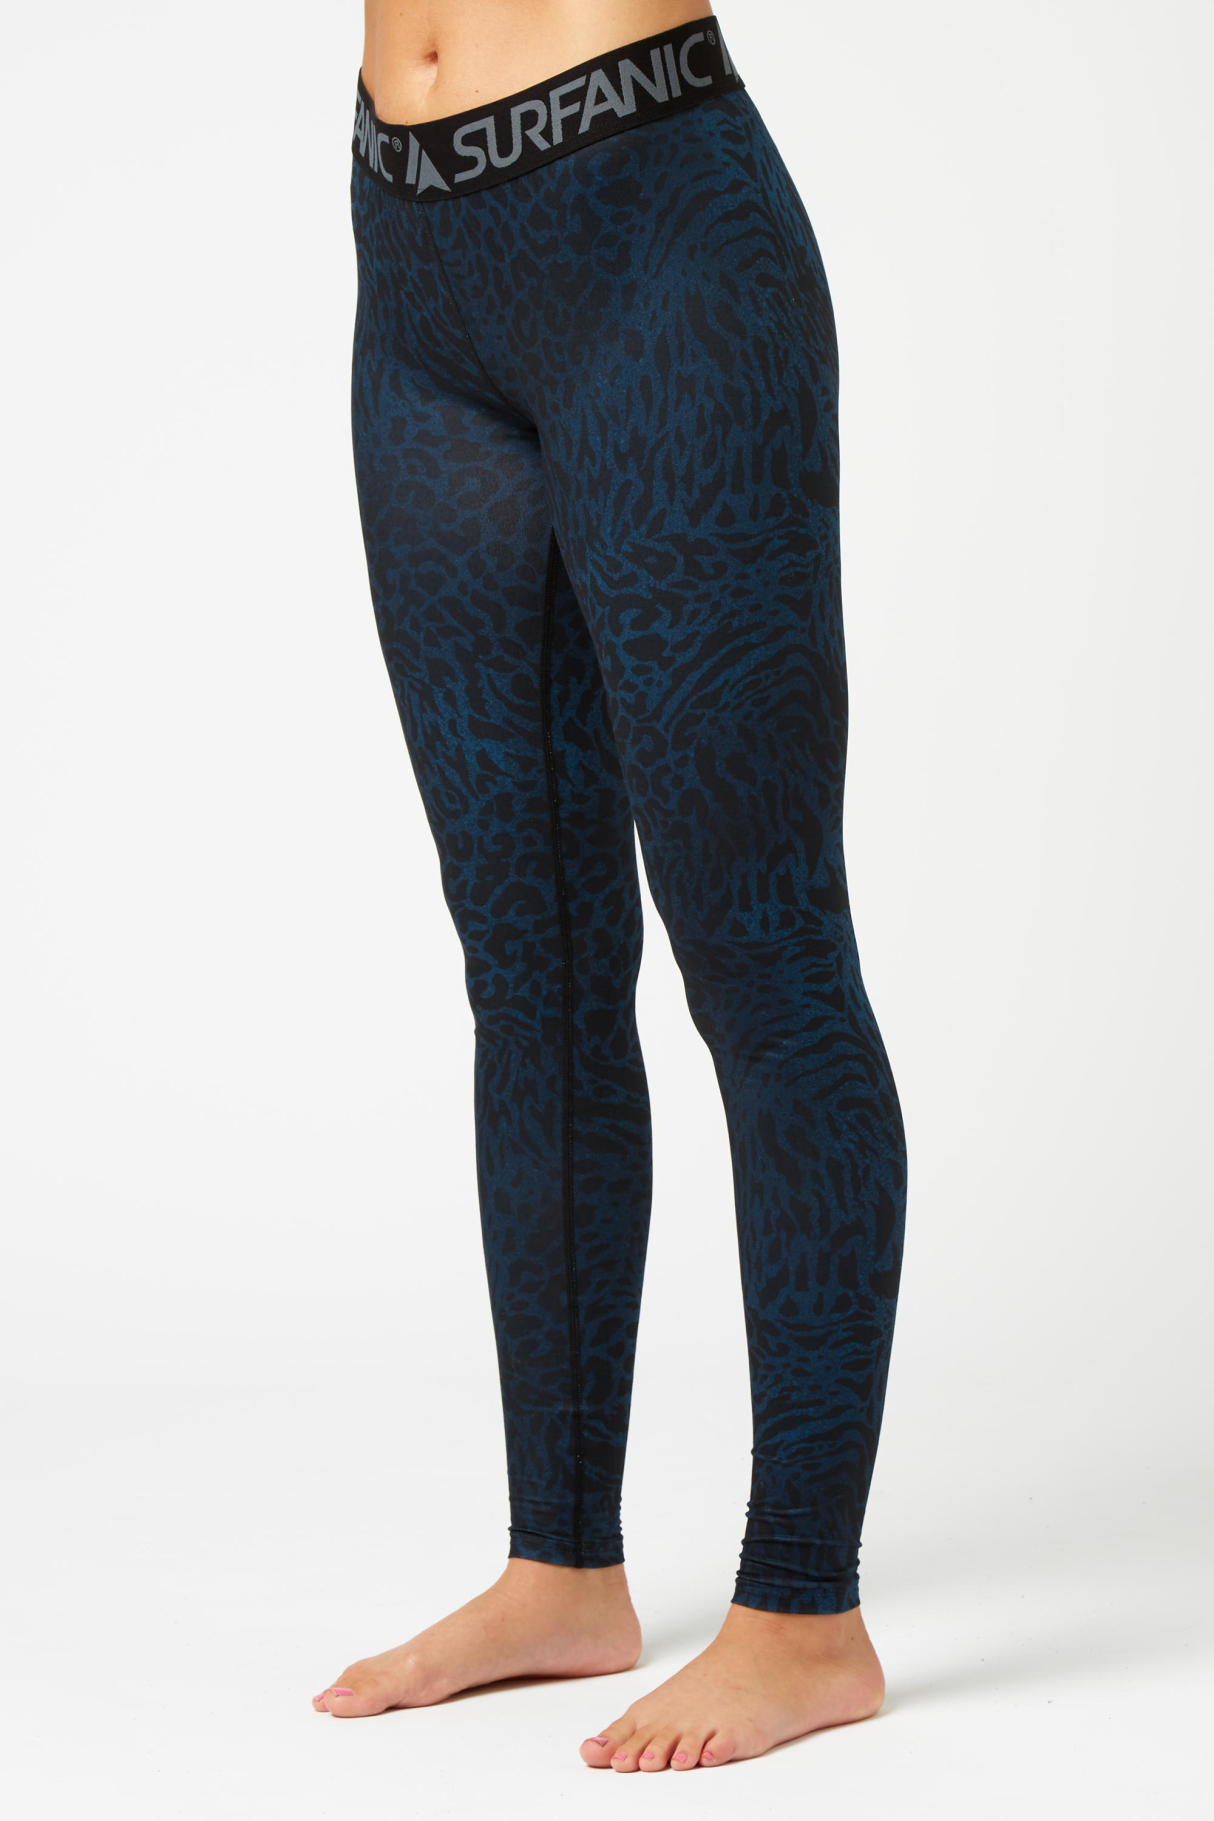 Термобелье панталоны COZY LIMITED EDITION LONG JOHN женские Surfanic, цвет синий, размер S - фото 1